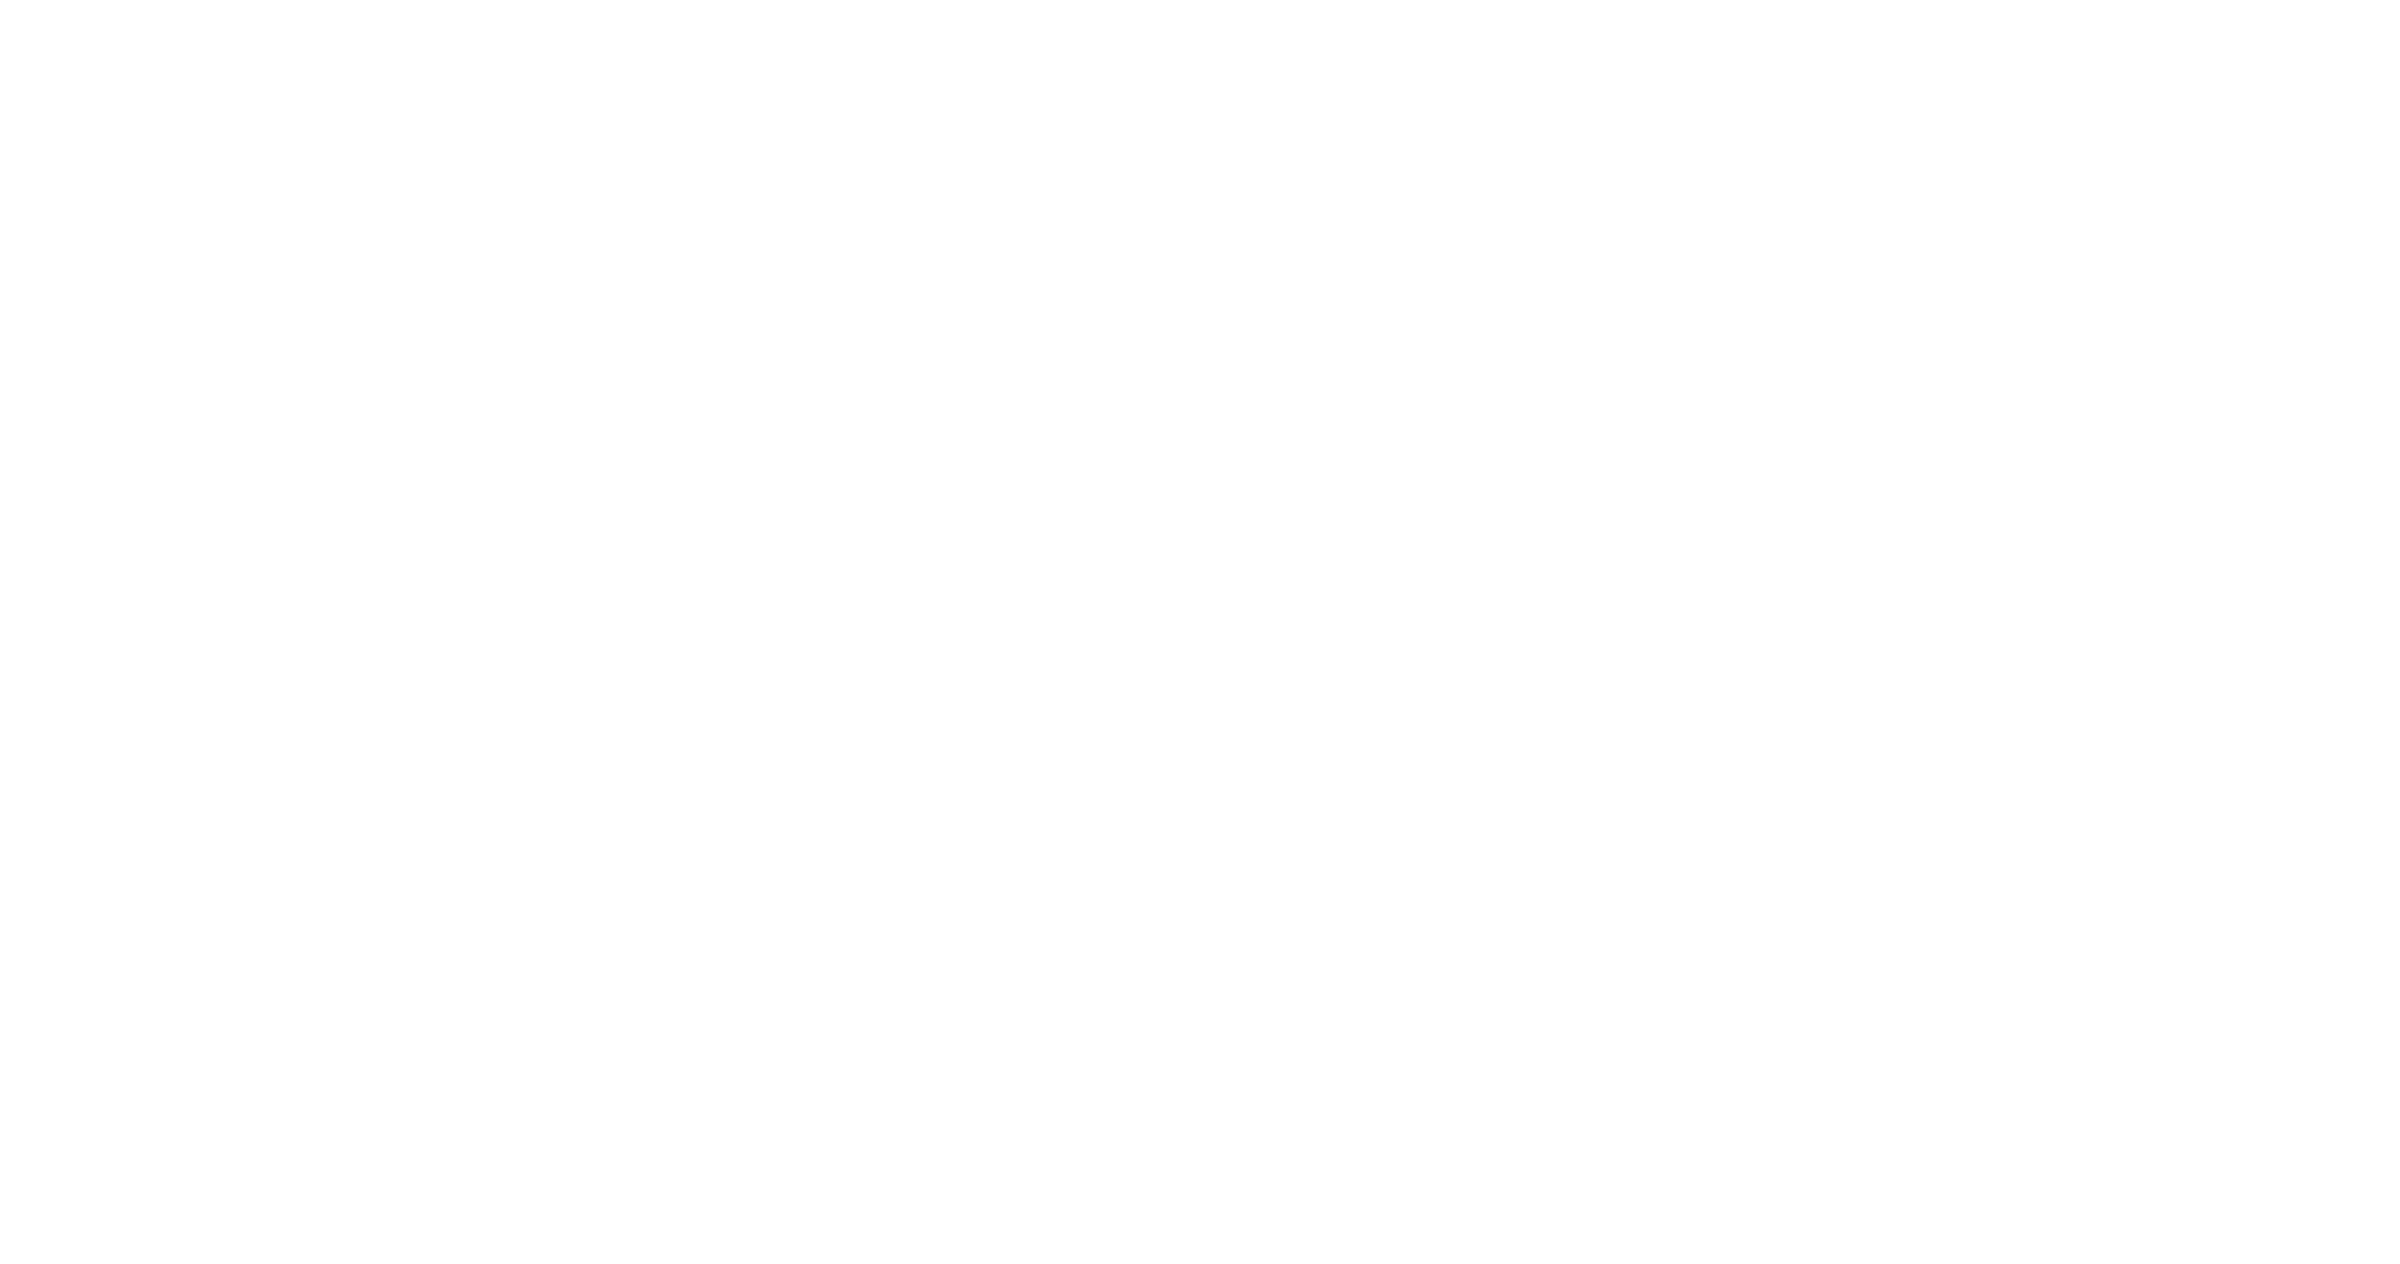 Nordstrom Rack Logo - Nordstrom Rack Logo PNG Transparent & SVG Vector - Freebie Supply